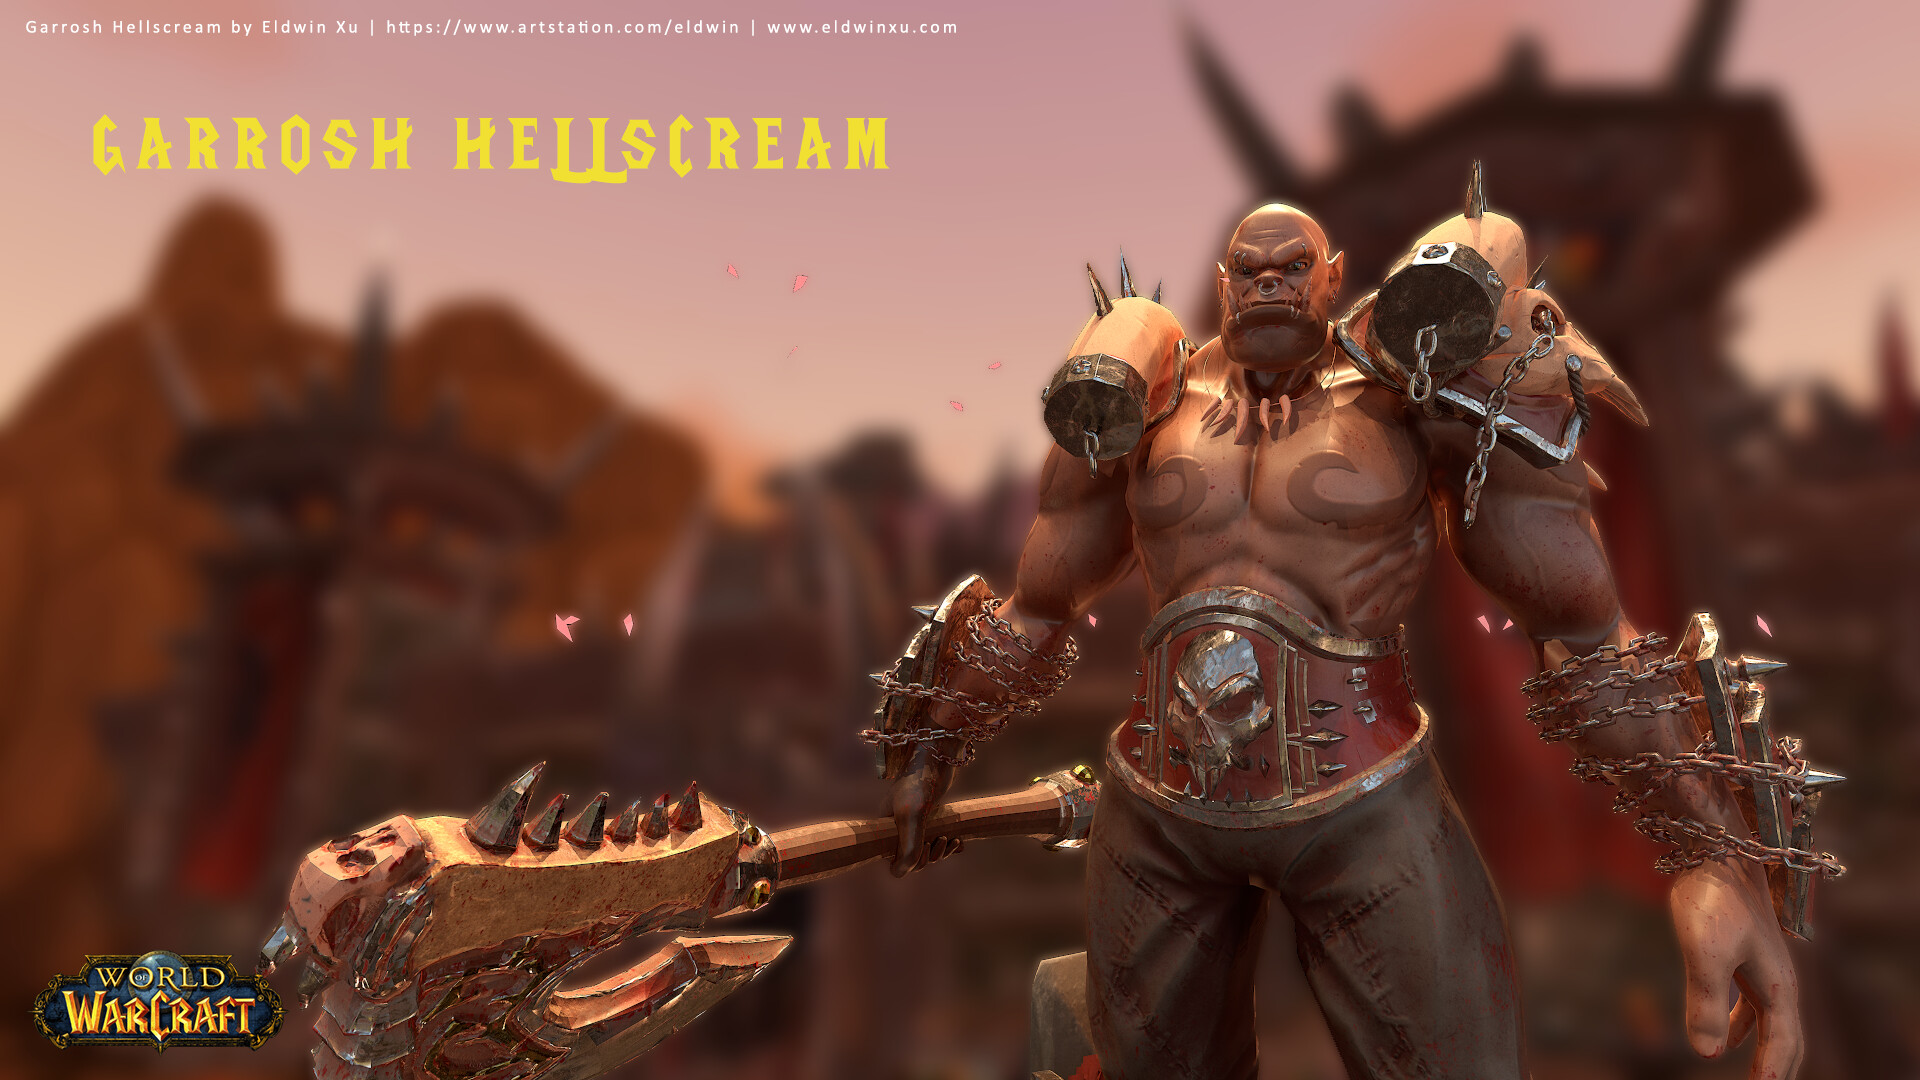 Garrosh Hellscream Fan Art In The Art Style Of Overwatch - World Of Warcraft , HD Wallpaper & Backgrounds